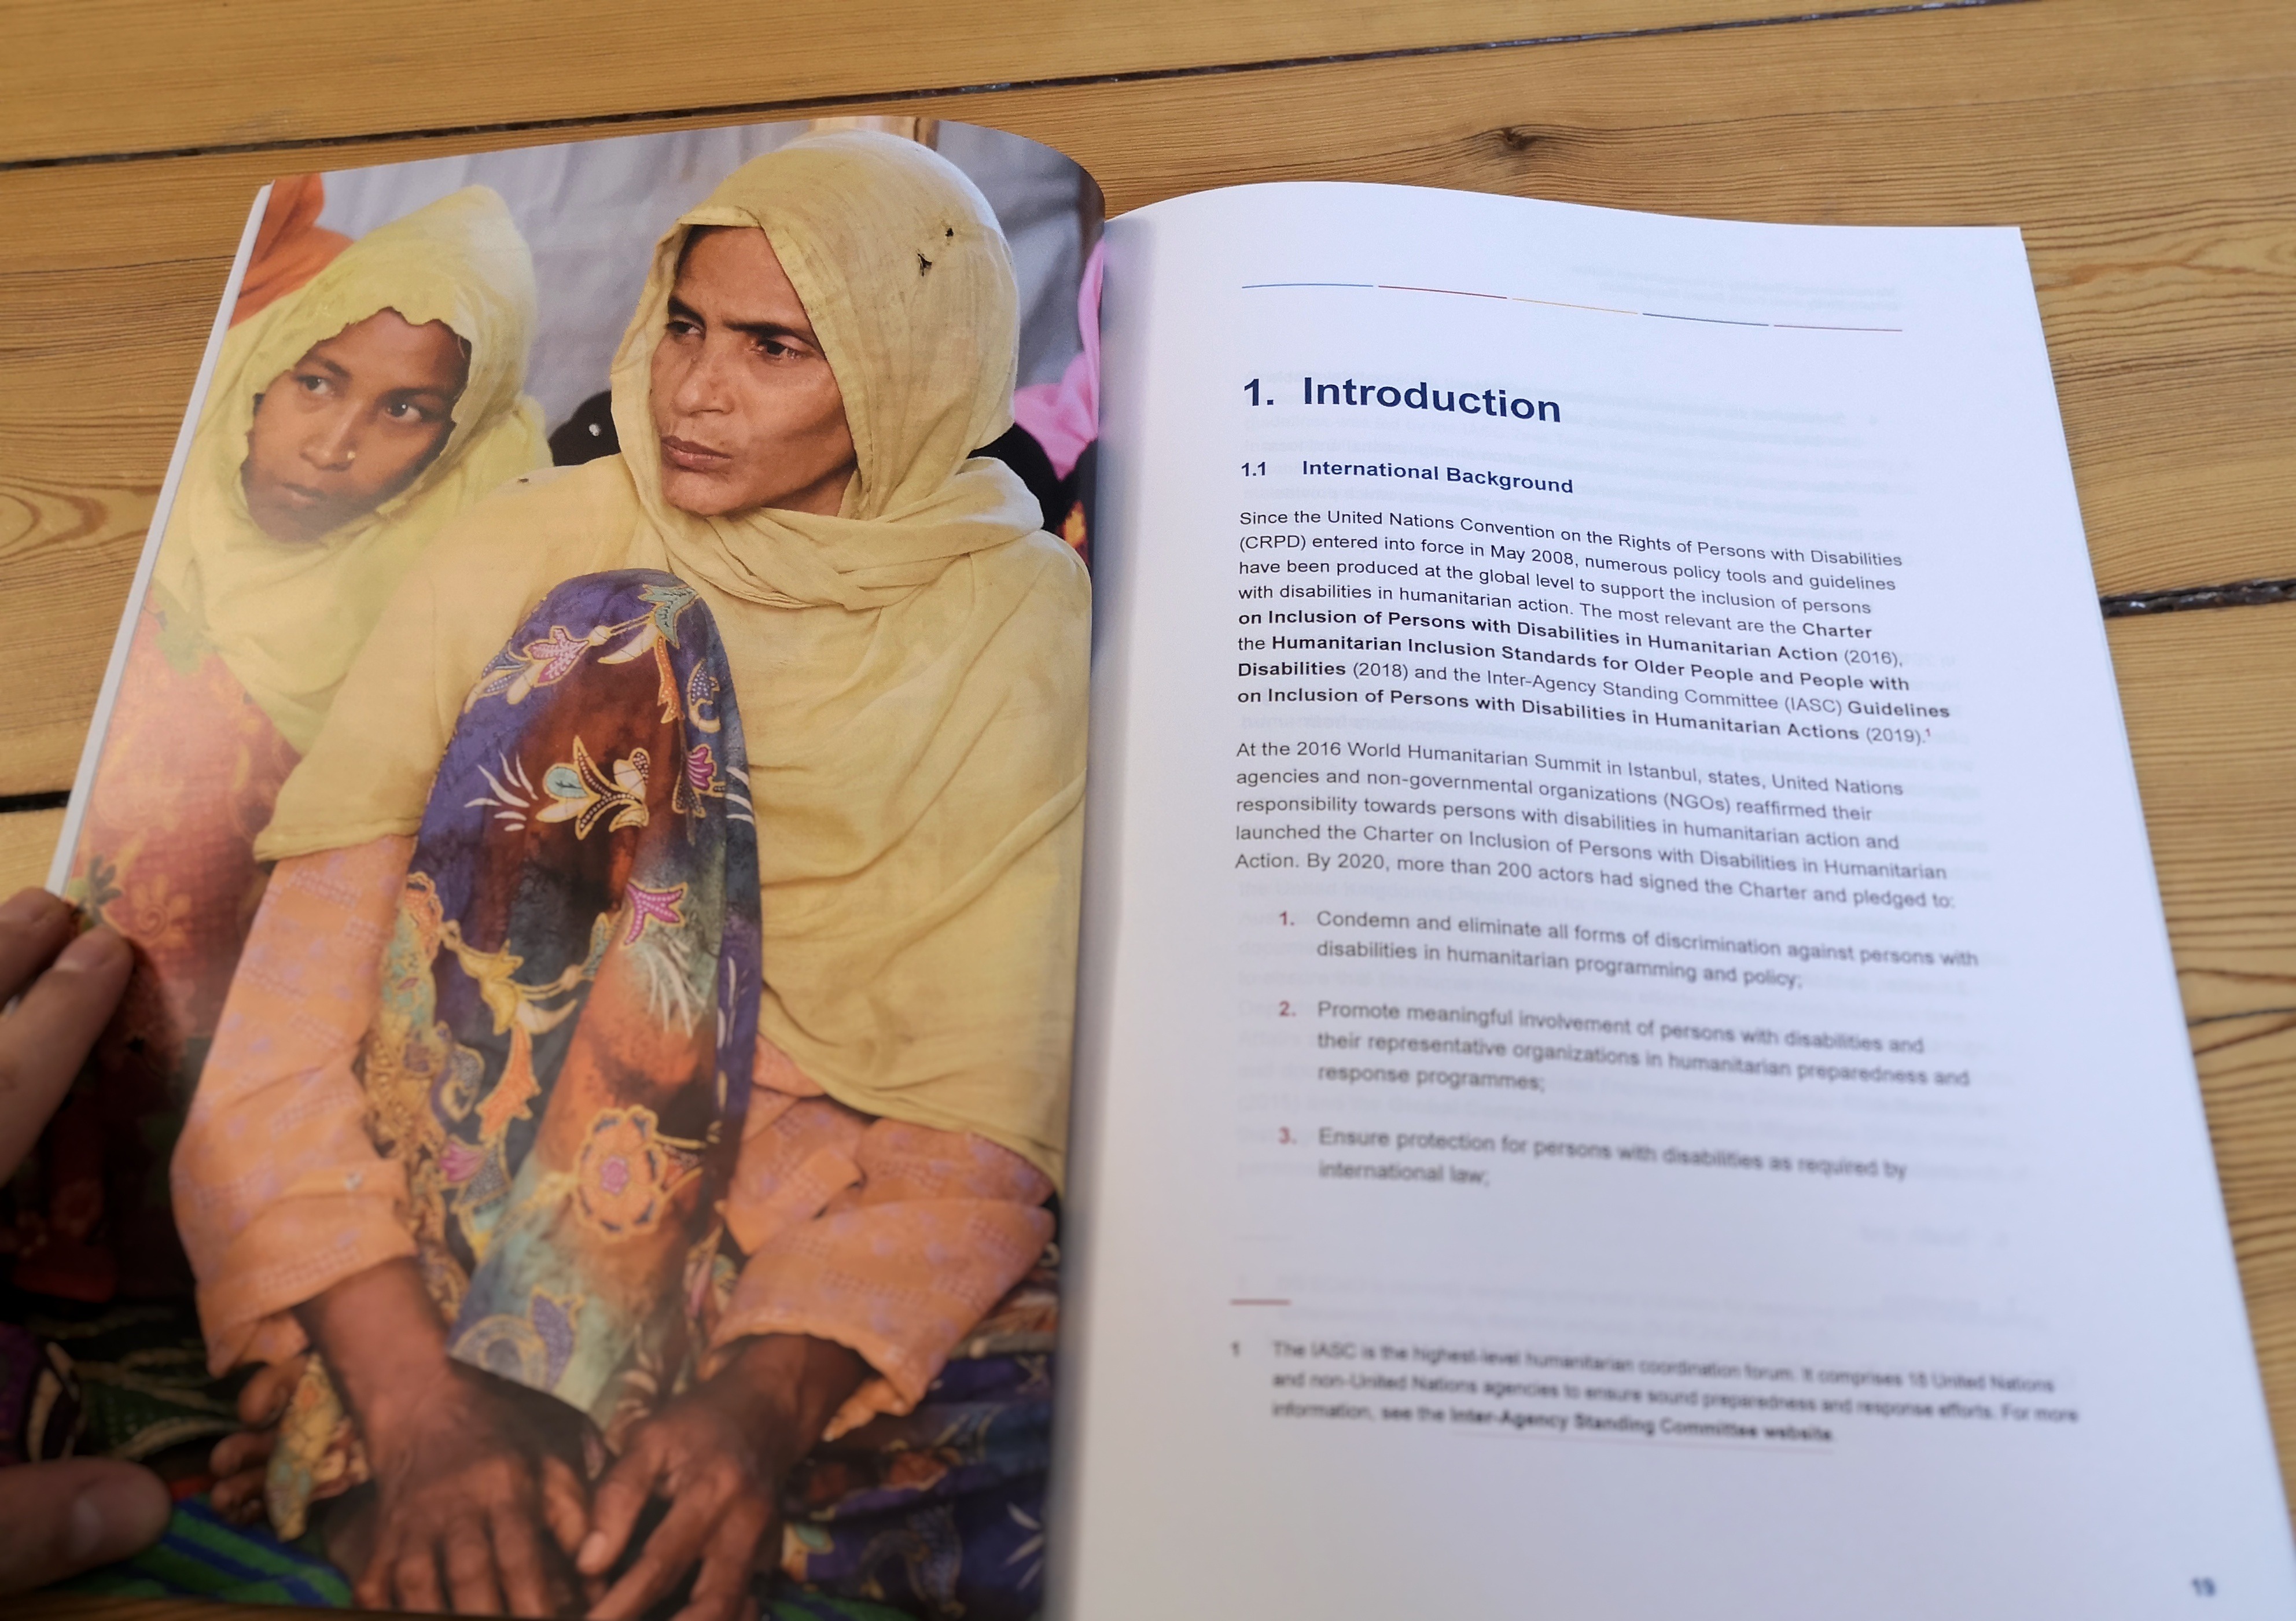 Das Foto zeigt das Einleitungskapitel des Forschungsberichts zu inklusiver humanitärer Hilfe in Bangladesh.